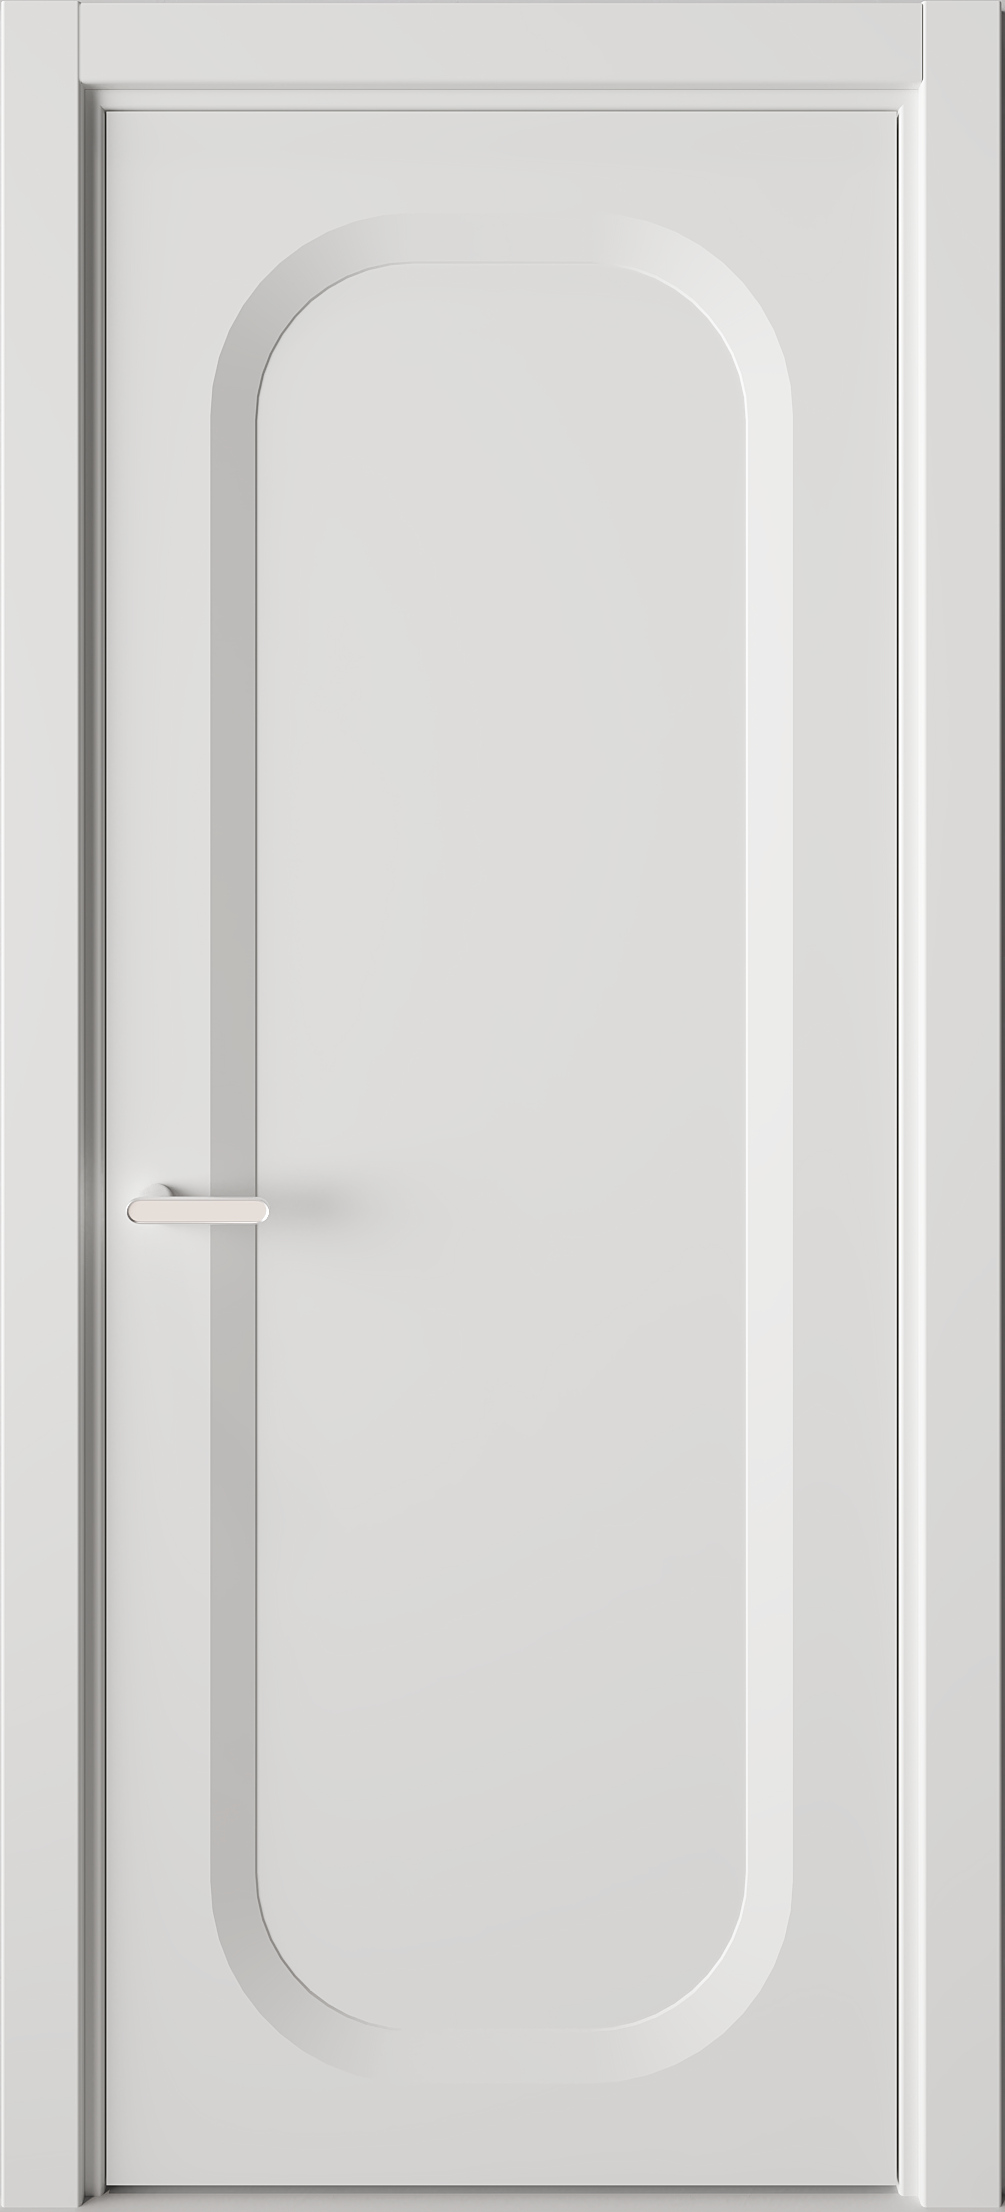 Межкомнатная дверь Солярис 78.175:КВ9 белый матовый